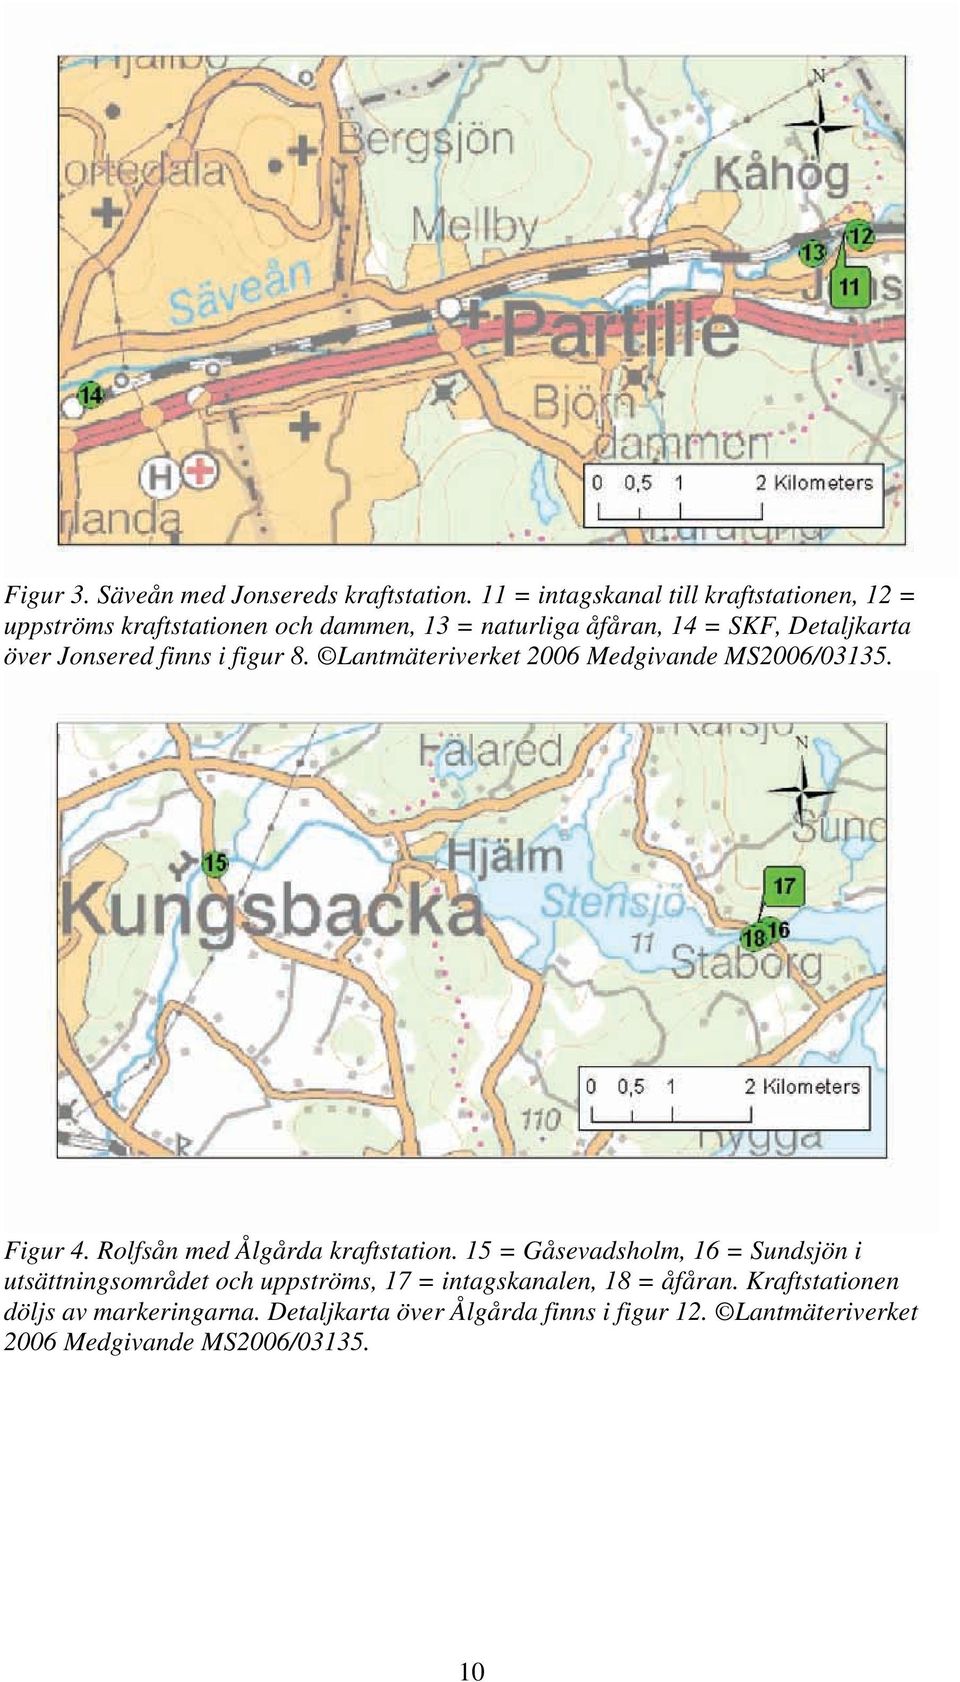 Jonsered finns i figur 8. Lantmäteriverket 2006 Medgivande MS2006/03135. Figur 4. Rolfsån med Ålgårda kraftstation.